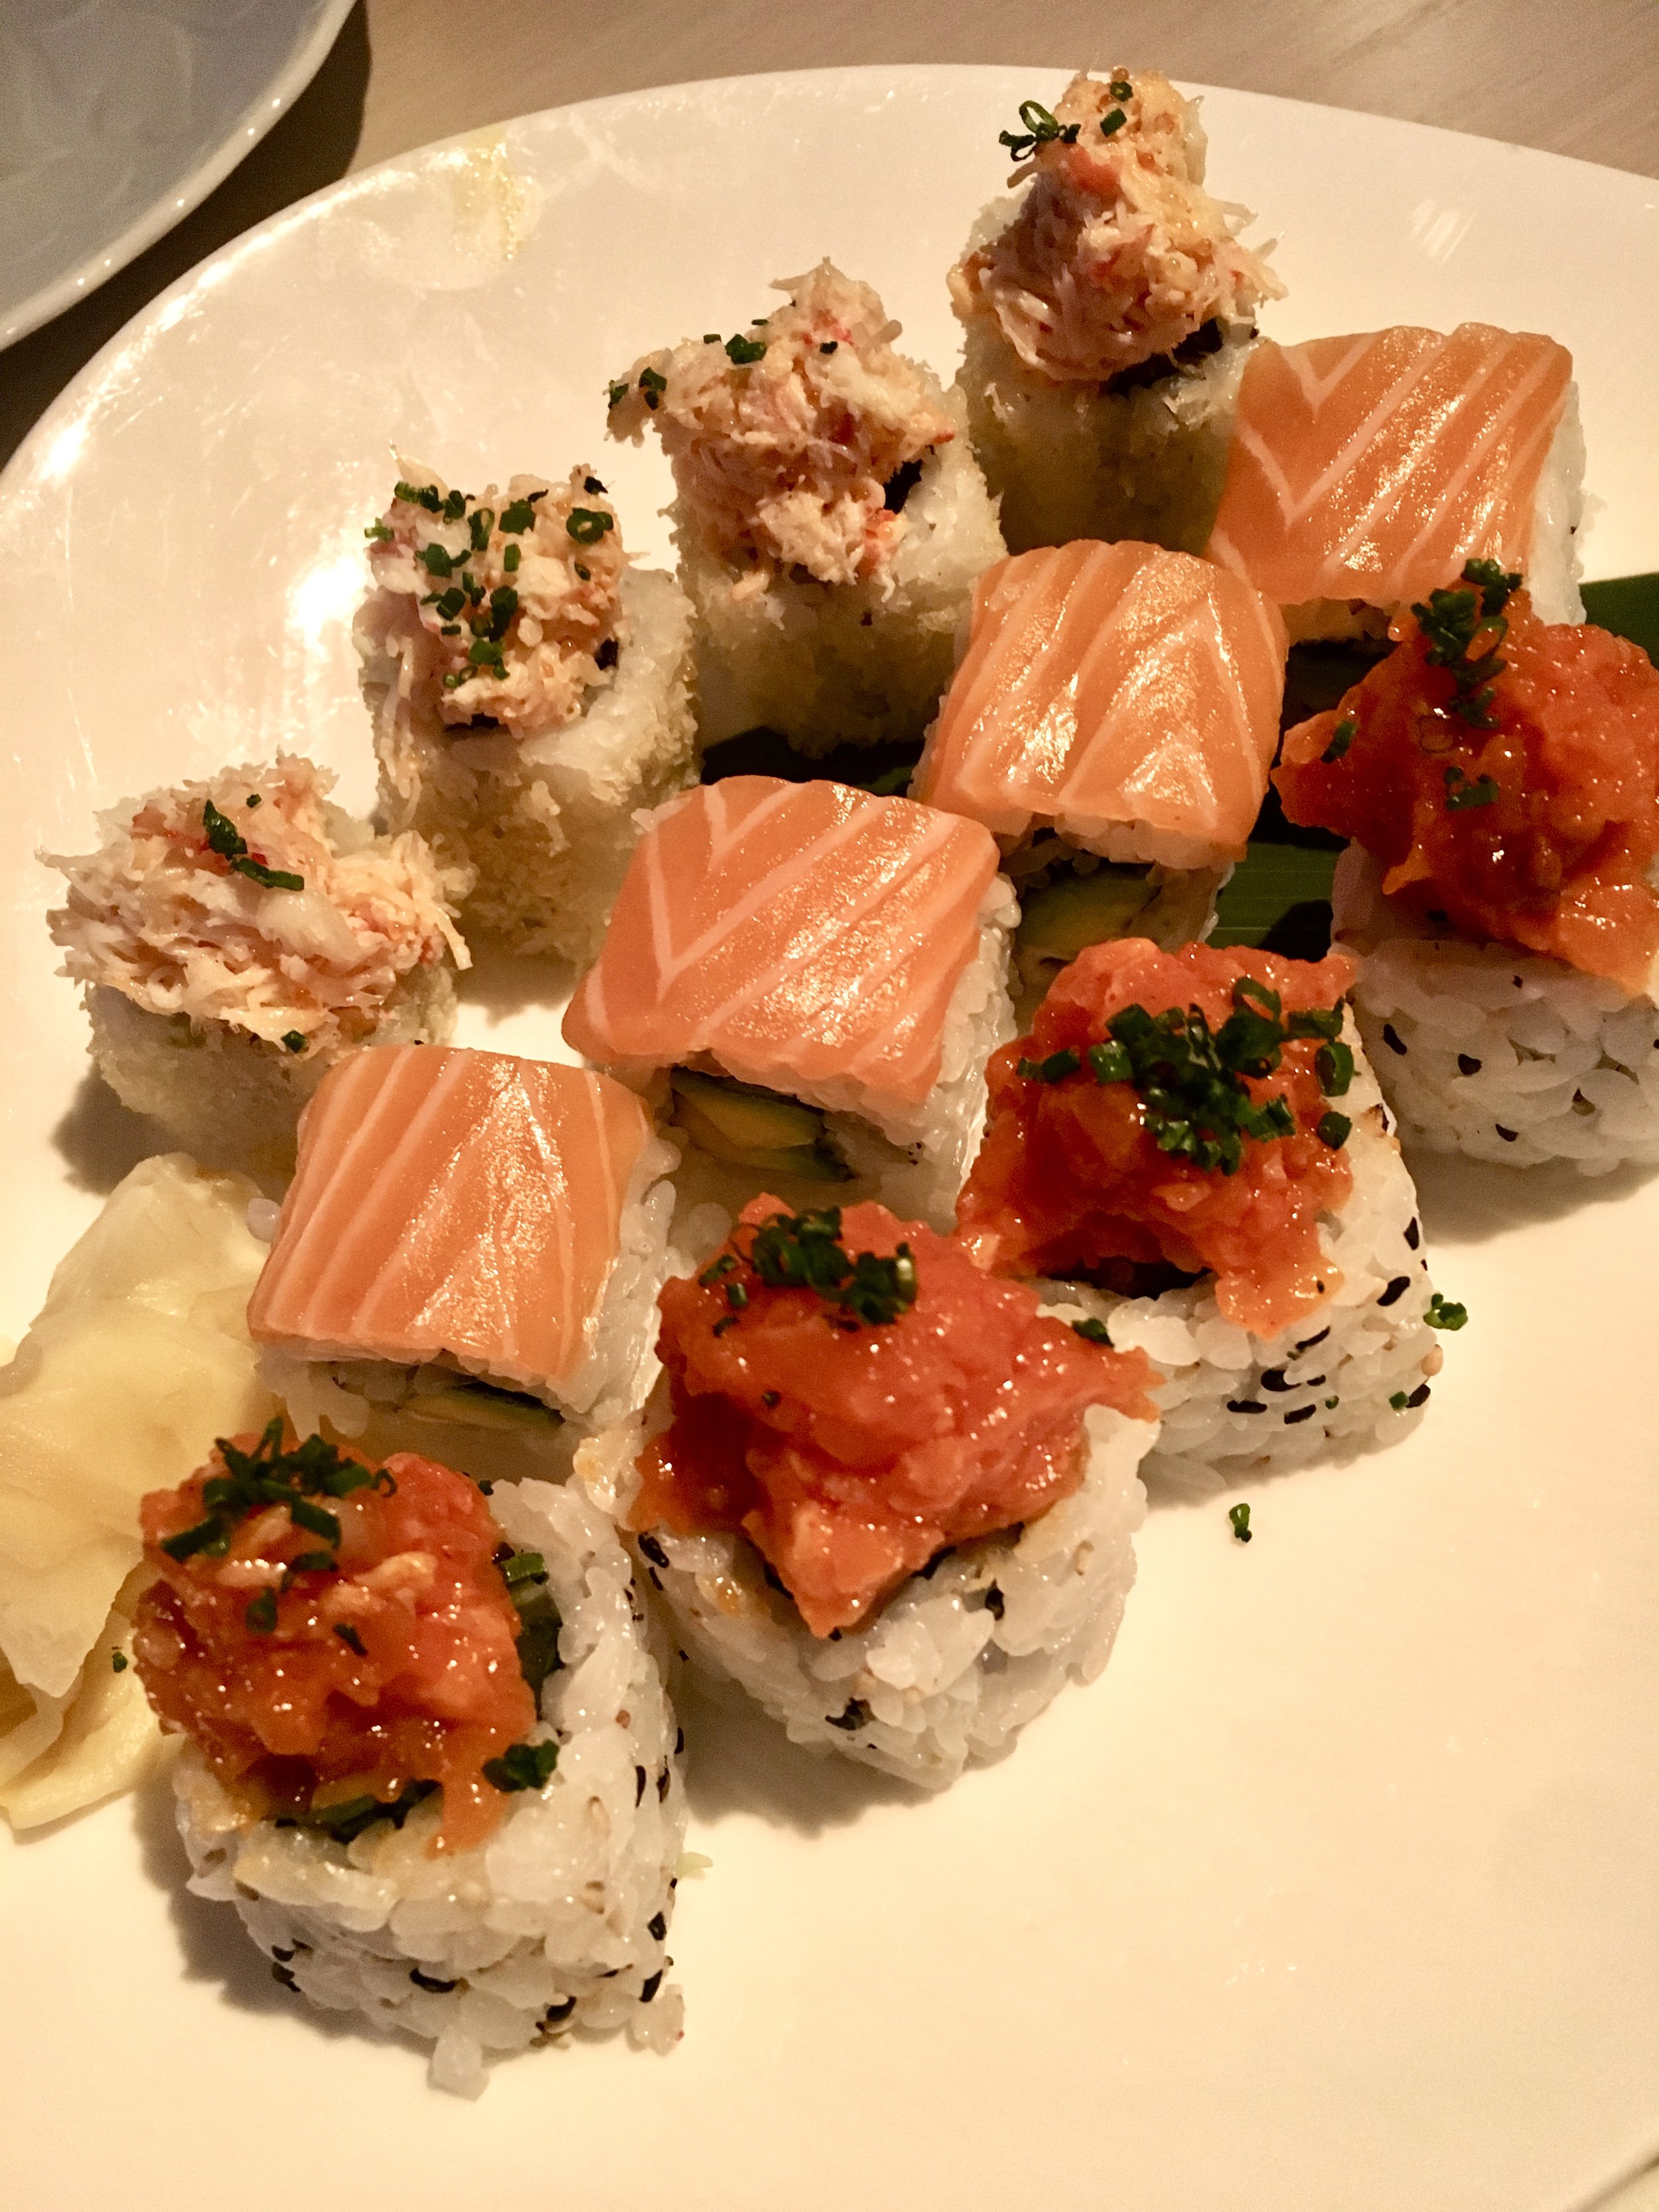 Selection of sushi rolls at Sake no Hana